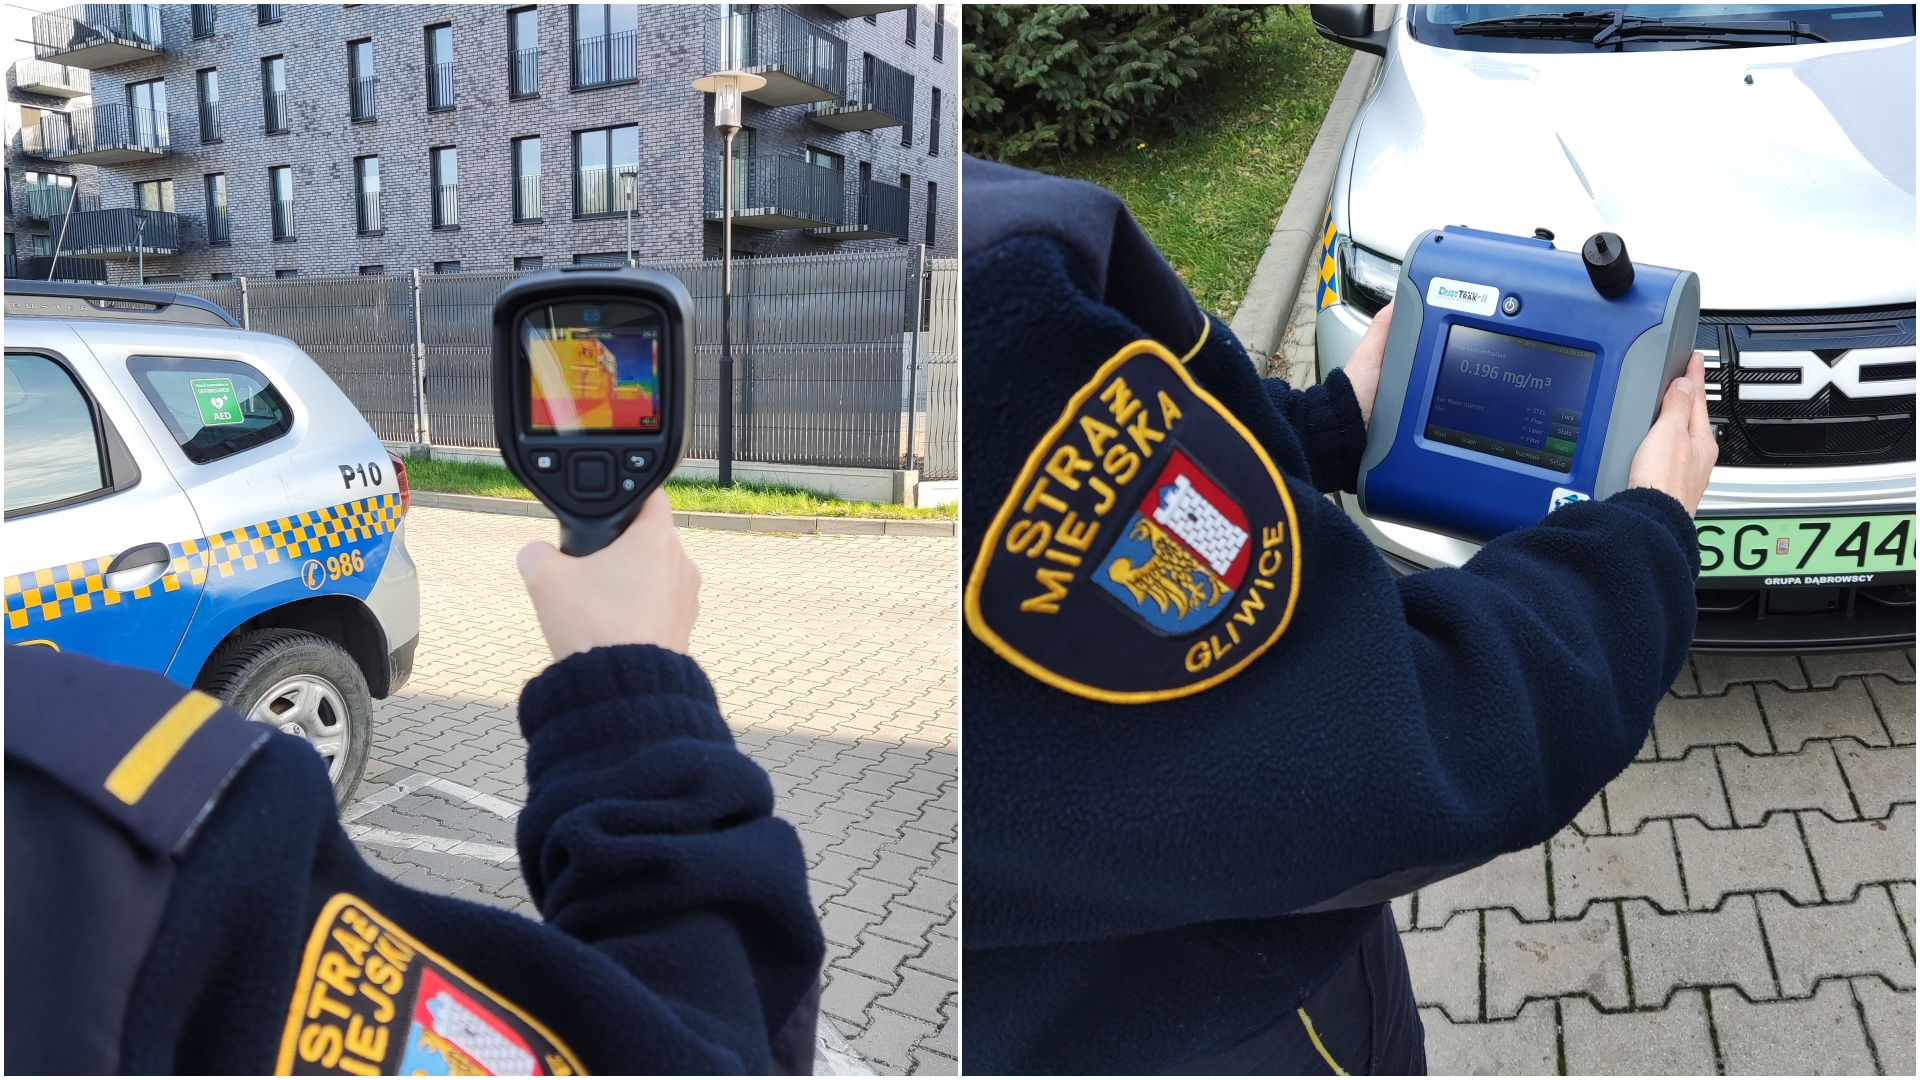 Strażnicy Miejscy Ruszają Na Kontrole Mają Nowy Sprzęt I Samochód Gliwice Infogliwicepl 2908